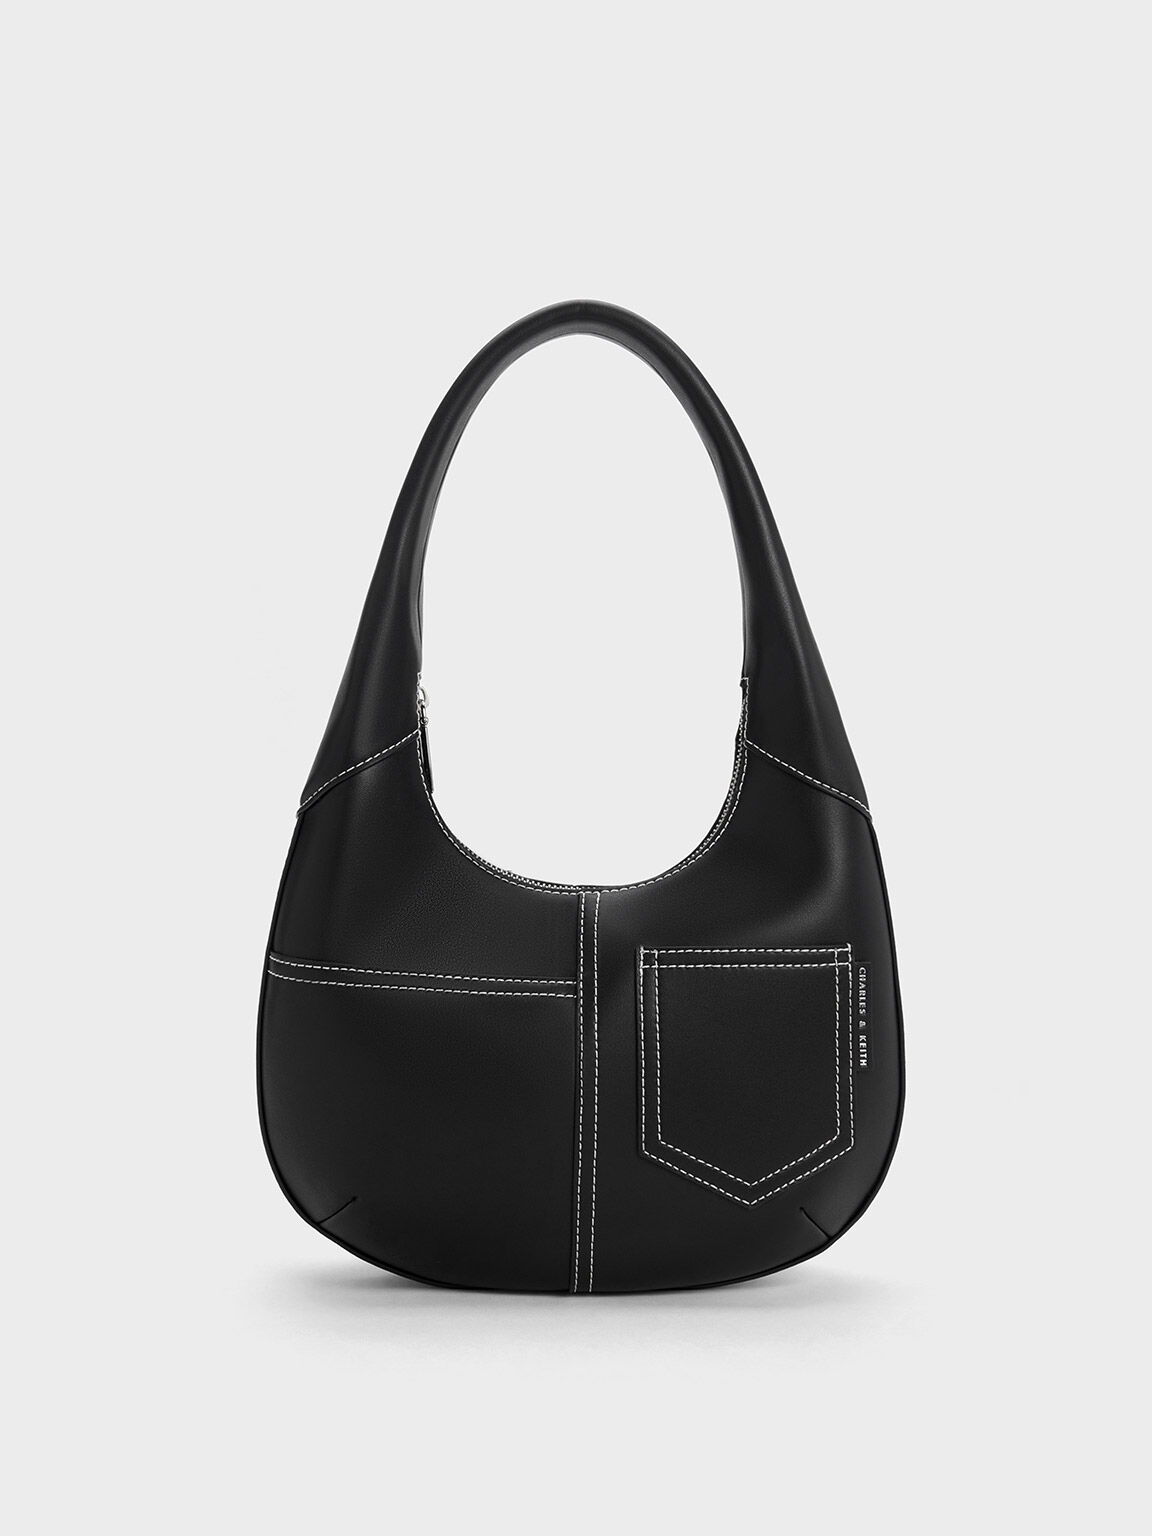 Vintage Women's Bag - Black